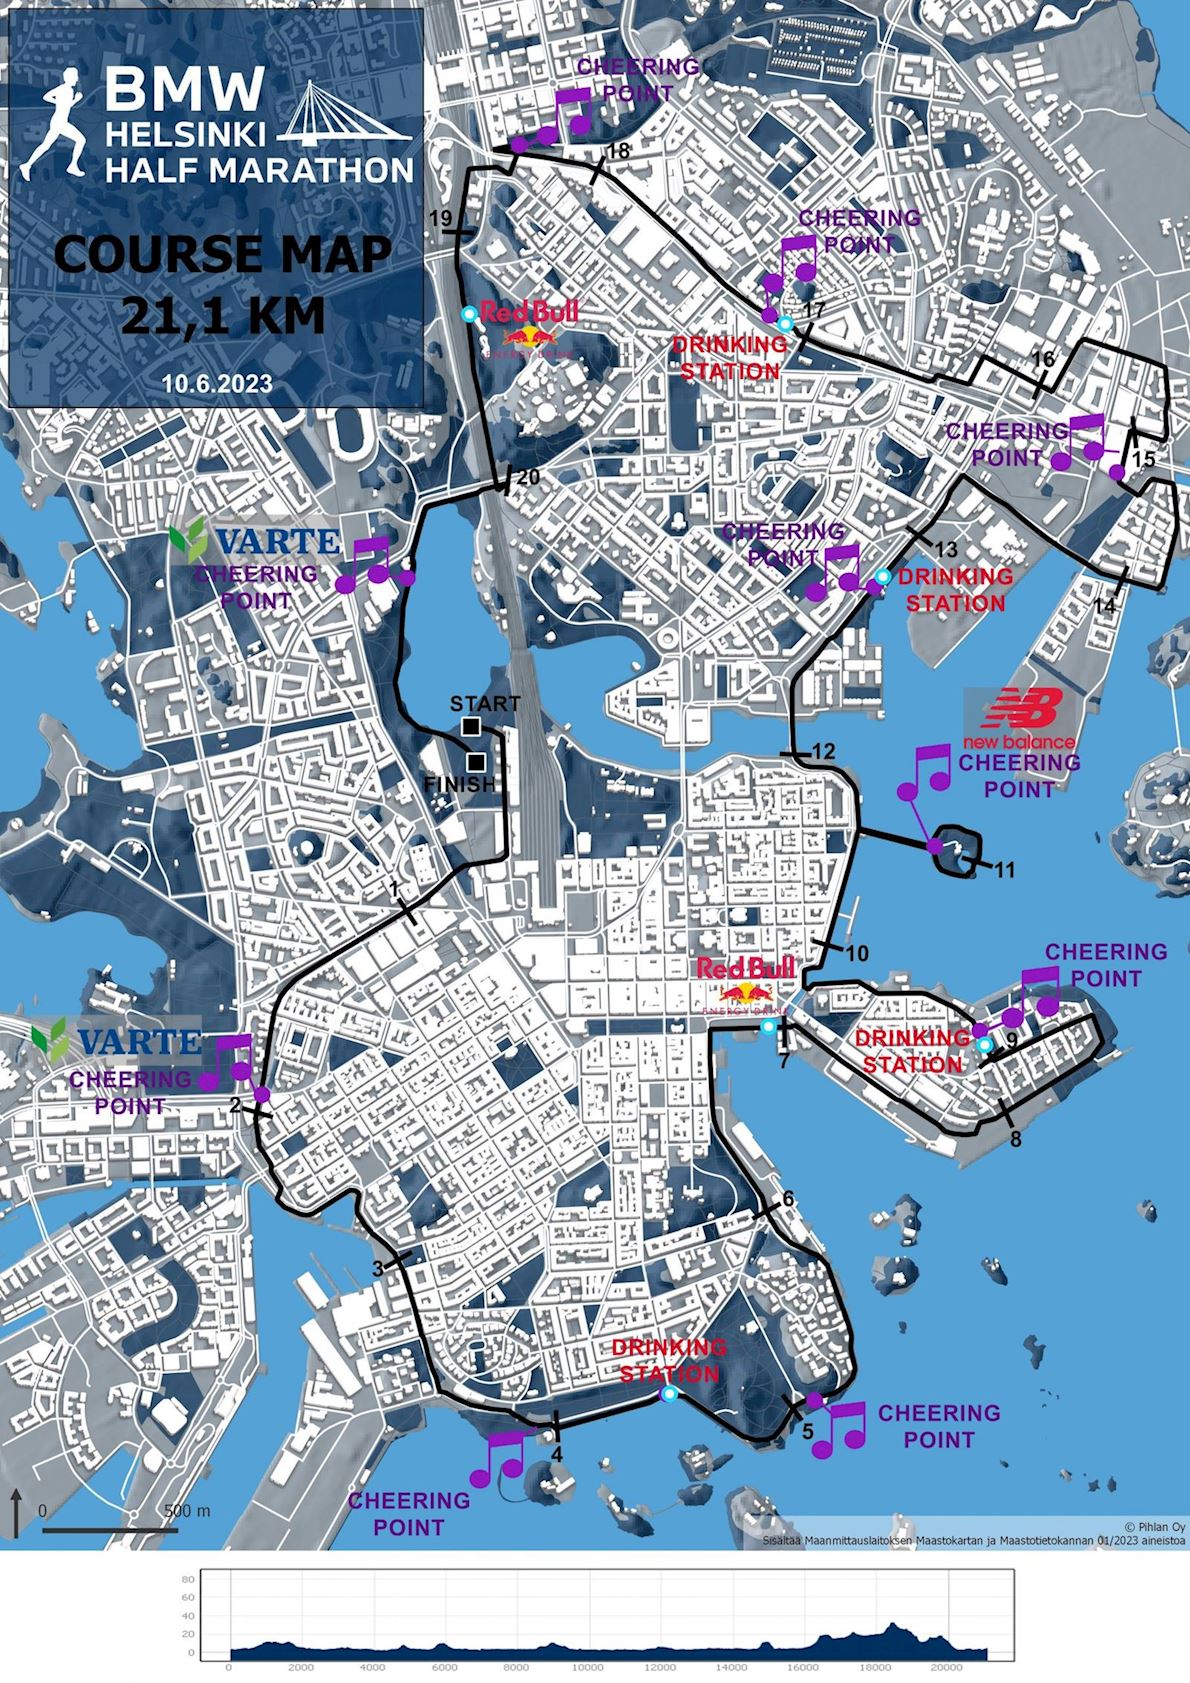 BMW Helsinki Half Marathon Route Map